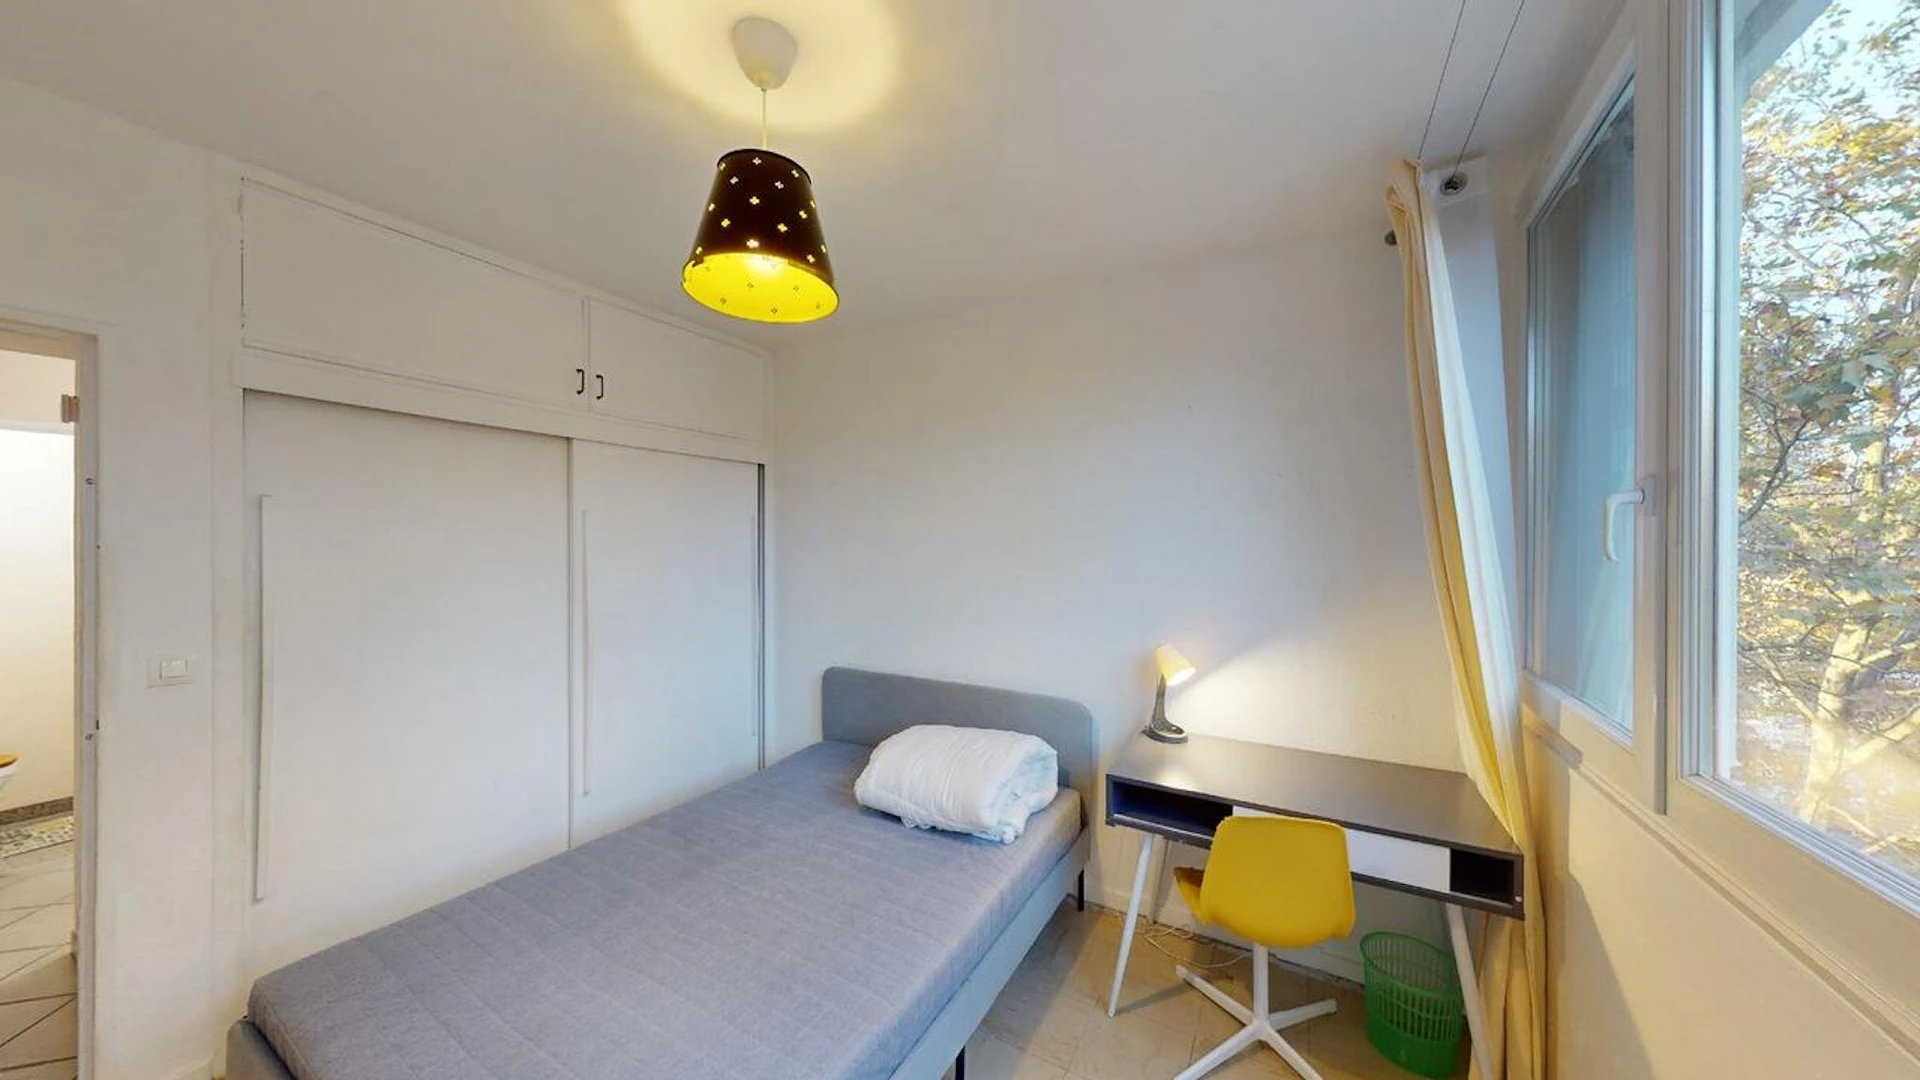 Quarto para alugar num apartamento partilhado em Limoges